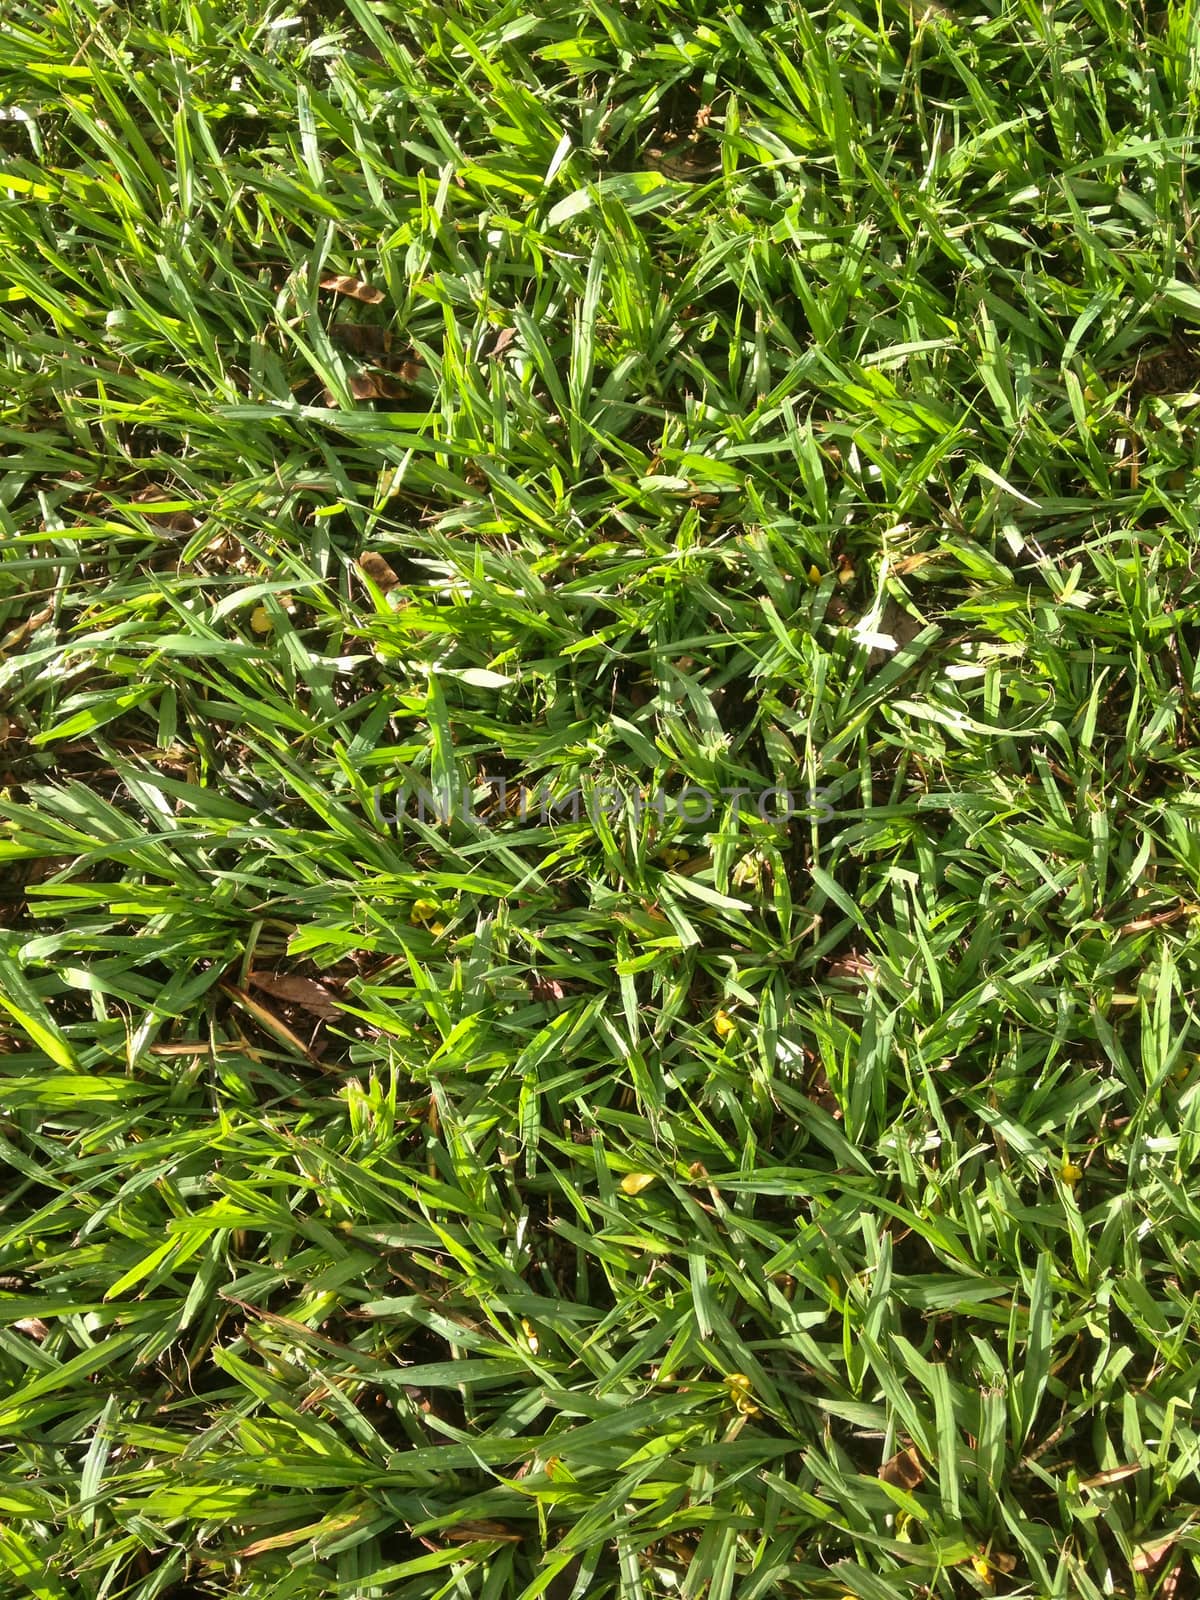 Green fresh grassy field for sport by eyeofpaul